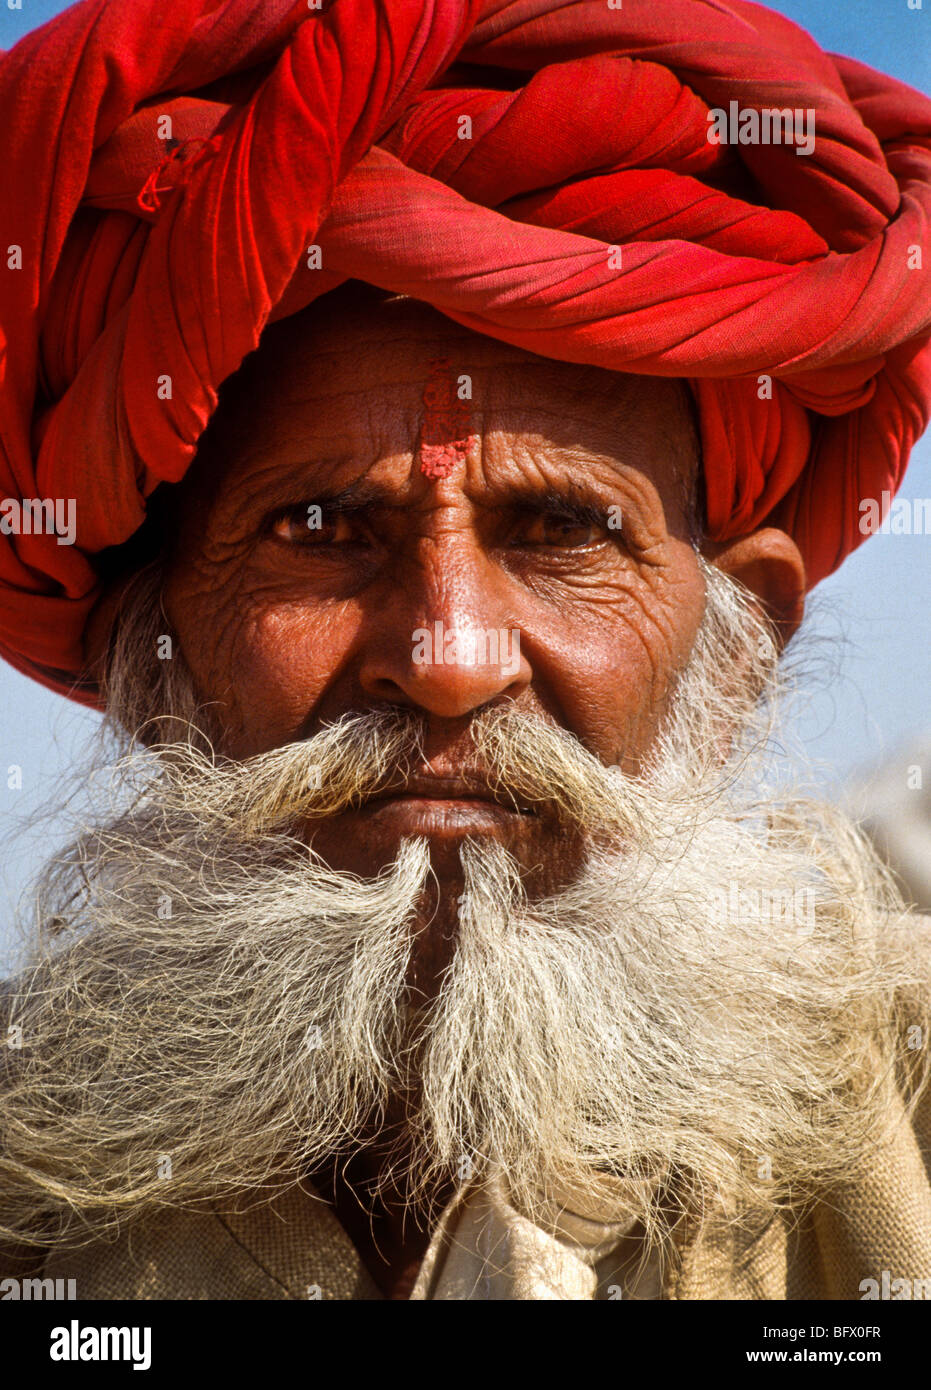 Ein älterer bärtiger Rajasthani Mann mit einem roten Turban während der Pushkar-Vieh-Messe in der Wüste von Rajasthan Indien Stockfoto